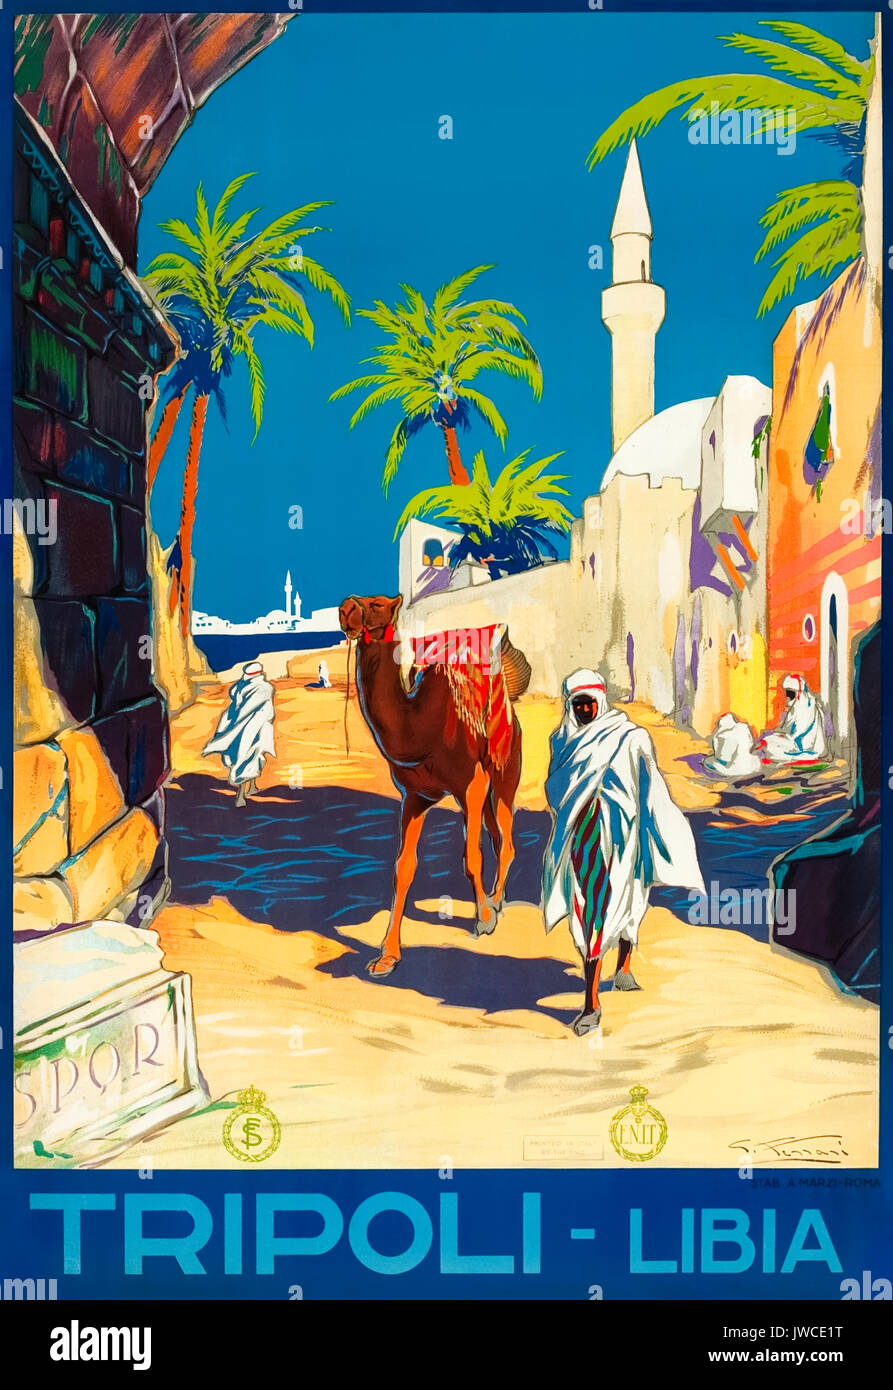 Tripoli - Libye 'tourisme' 1936 Affiche présentant les autochtones et un chameau passant sous une arche près de la mosquée de Dragut. Illustration de G. Ferrari pour Ferrovie dello Stato (FS -Chemins de fer de l'État italien) et l'ENIT (Agenzia nazionale del turismo - Office du tourisme italien). Banque D'Images